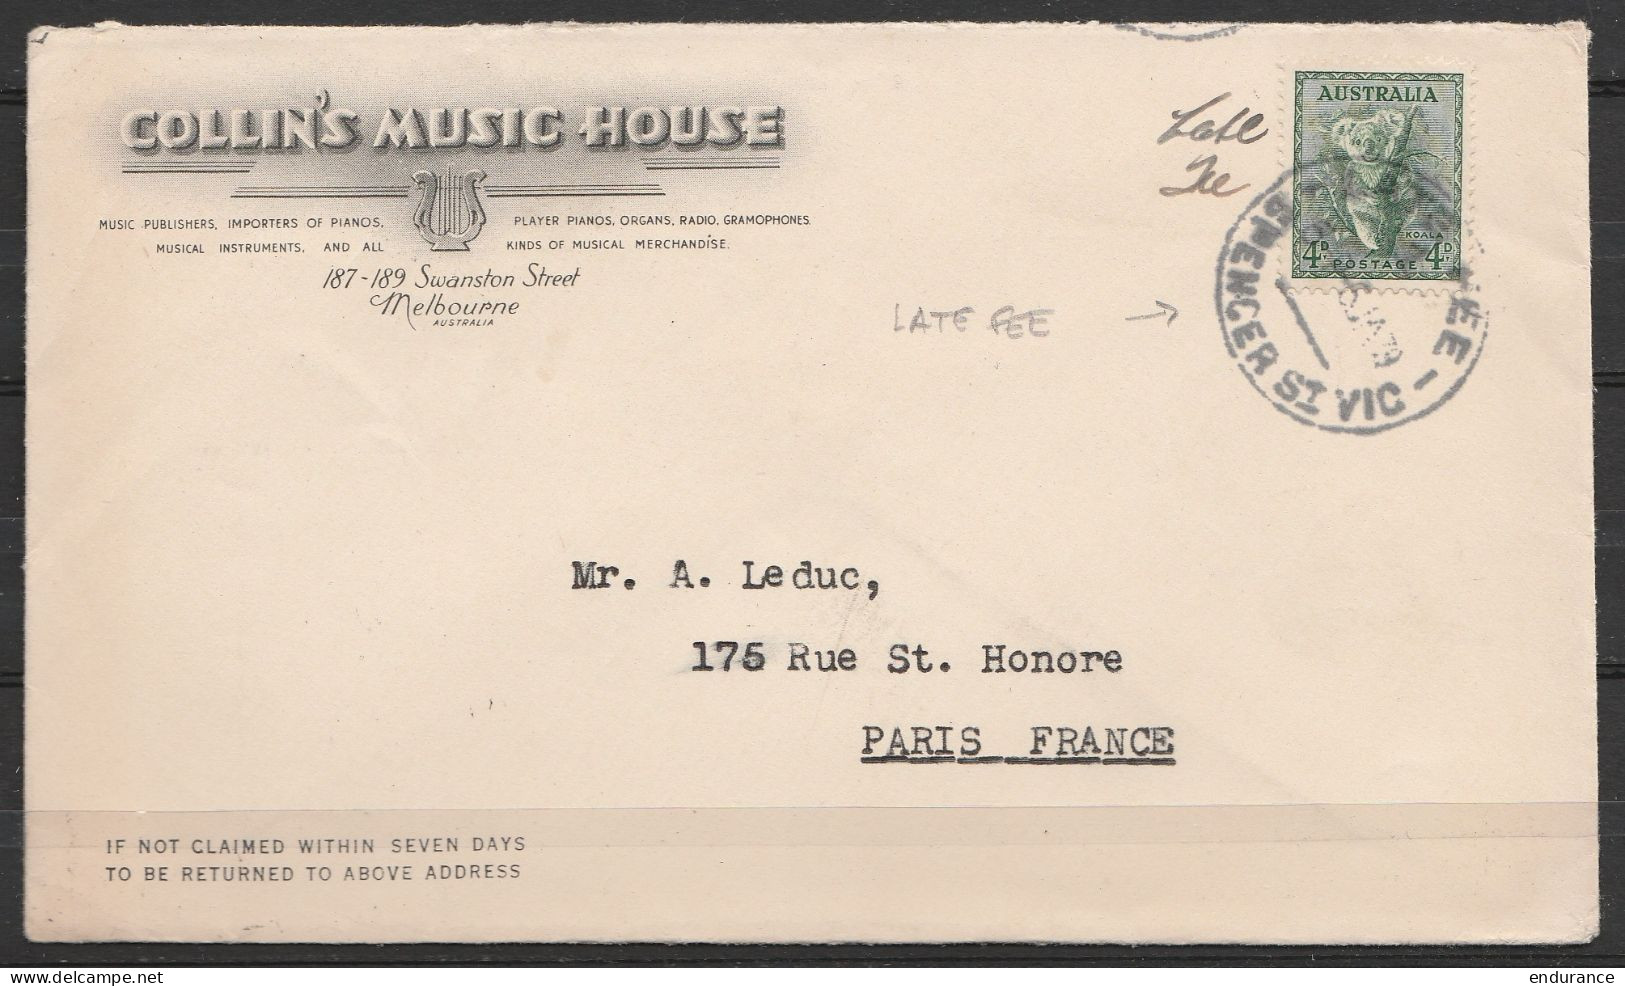 Australie - L. Entête "Collin's Music House" (Melbourne) Affr. 4d Càd "LATE FEE /6 JA 1939" Pour PARIS - Storia Postale